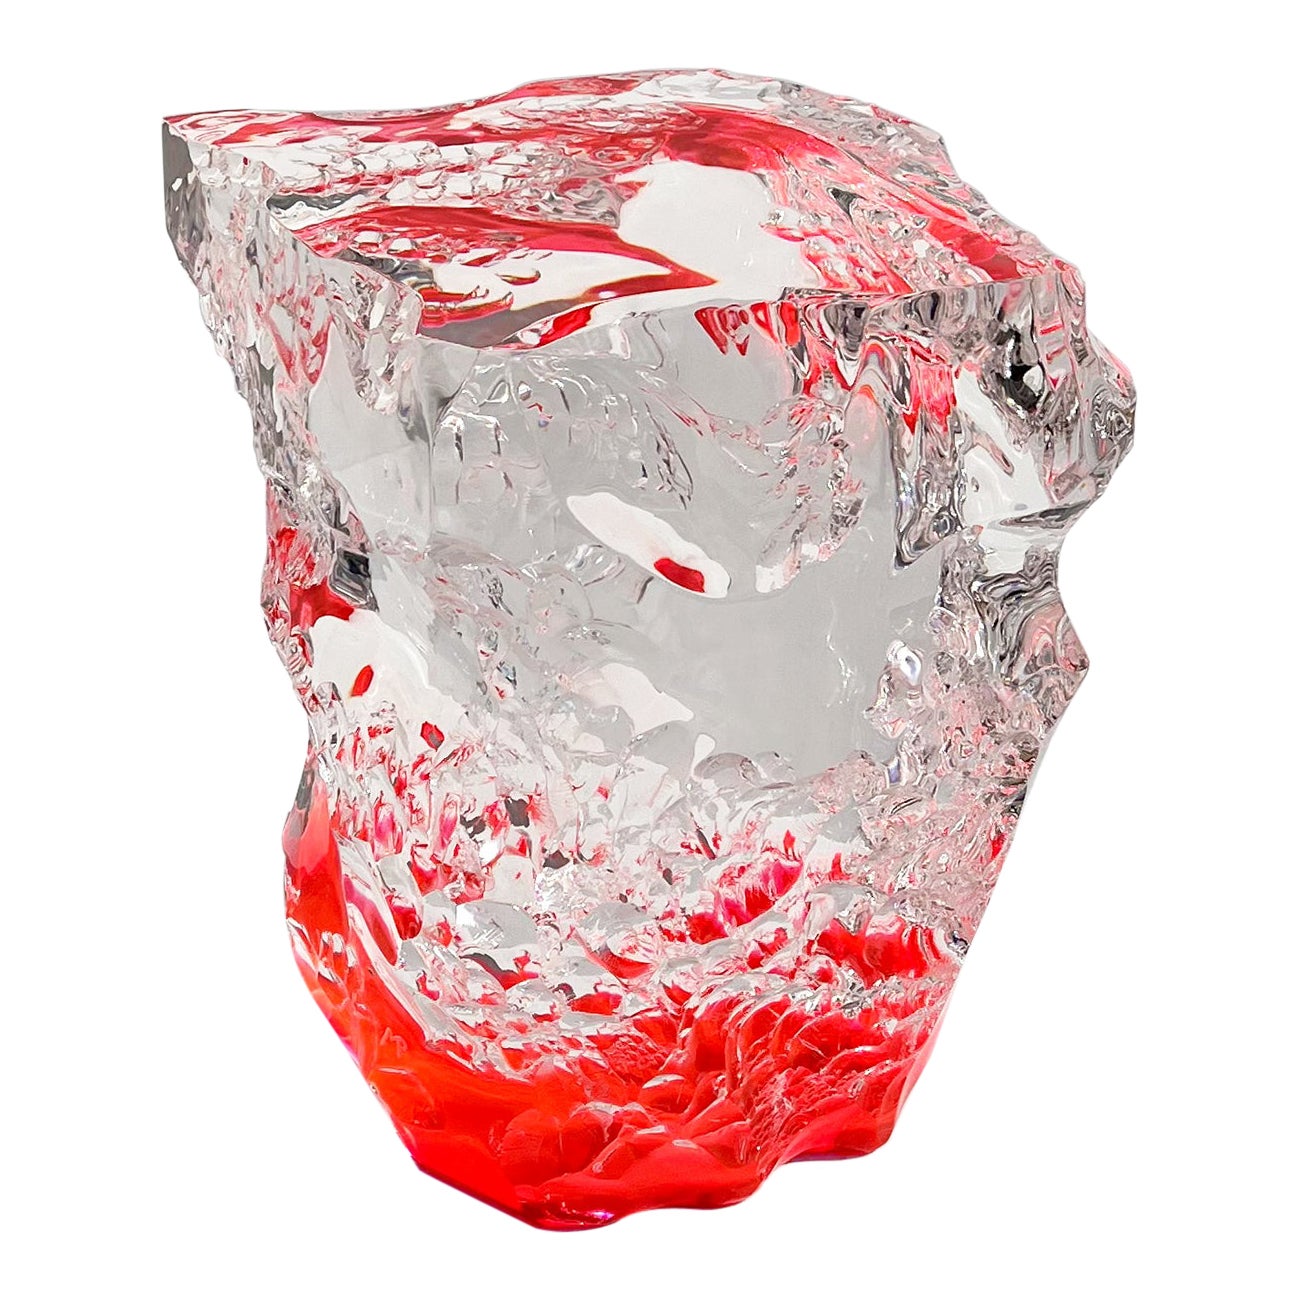 Table basse sculpturale en plexiglas rose « Prime Materia » du 21e siècle